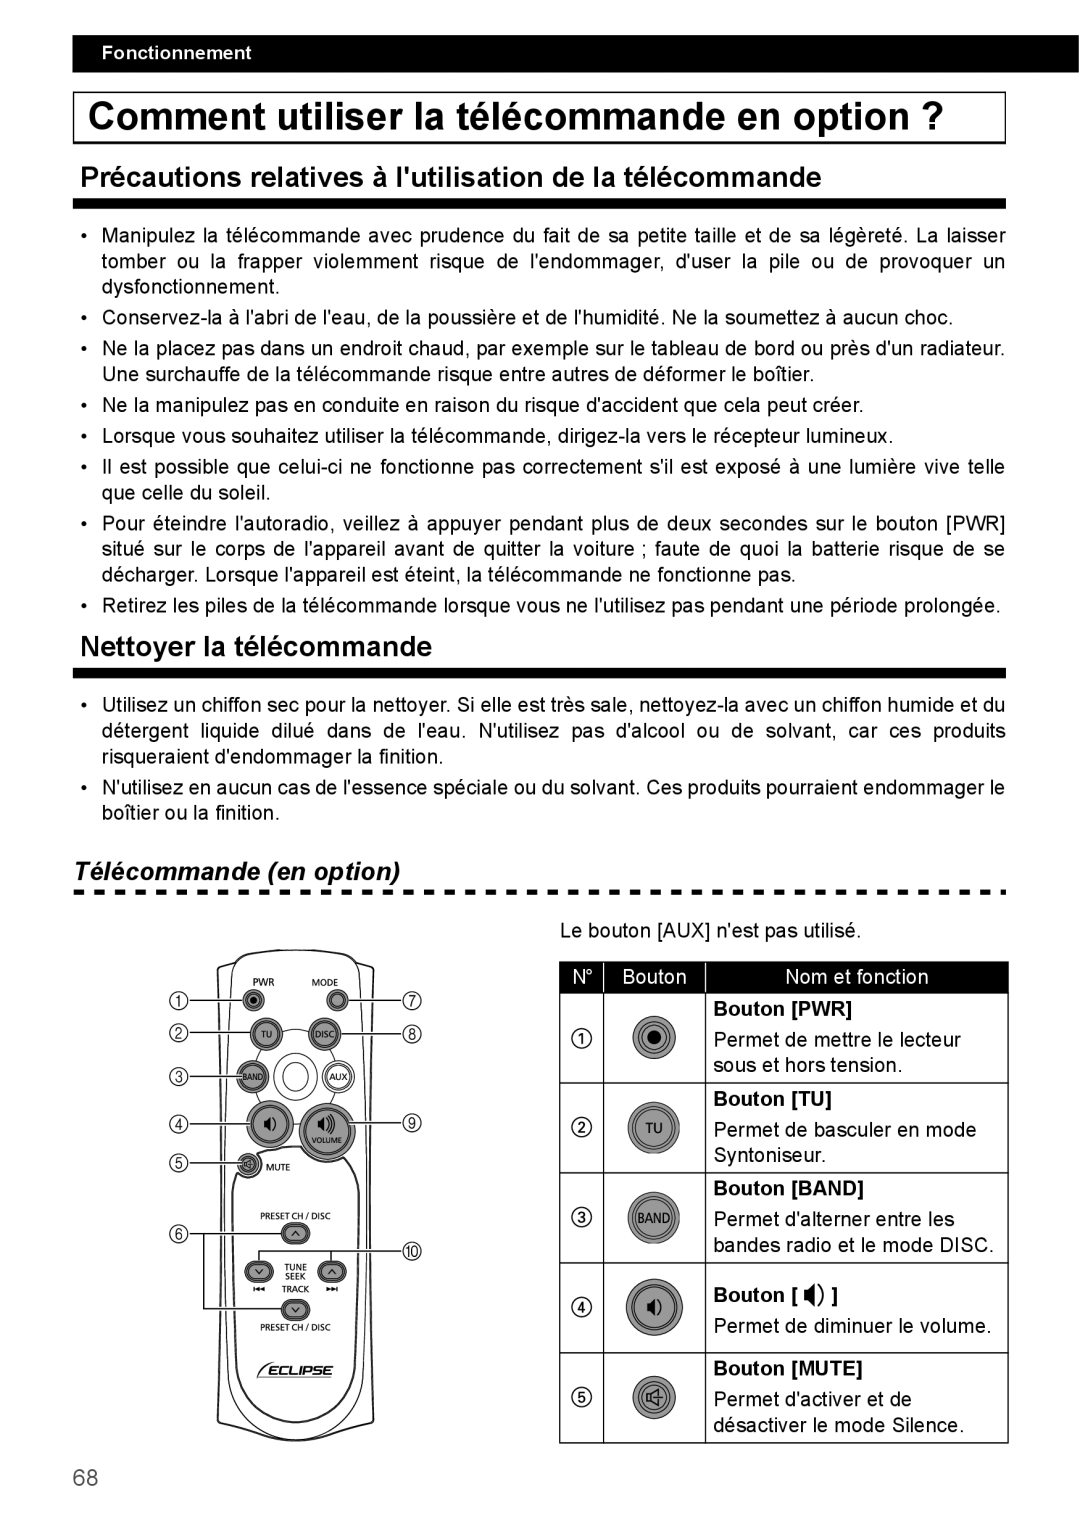 Eclipse - Fujitsu Ten CD2000 manual Comment utiliser la télécommande en option ?, Nettoyer la télécommande, N Bouton 